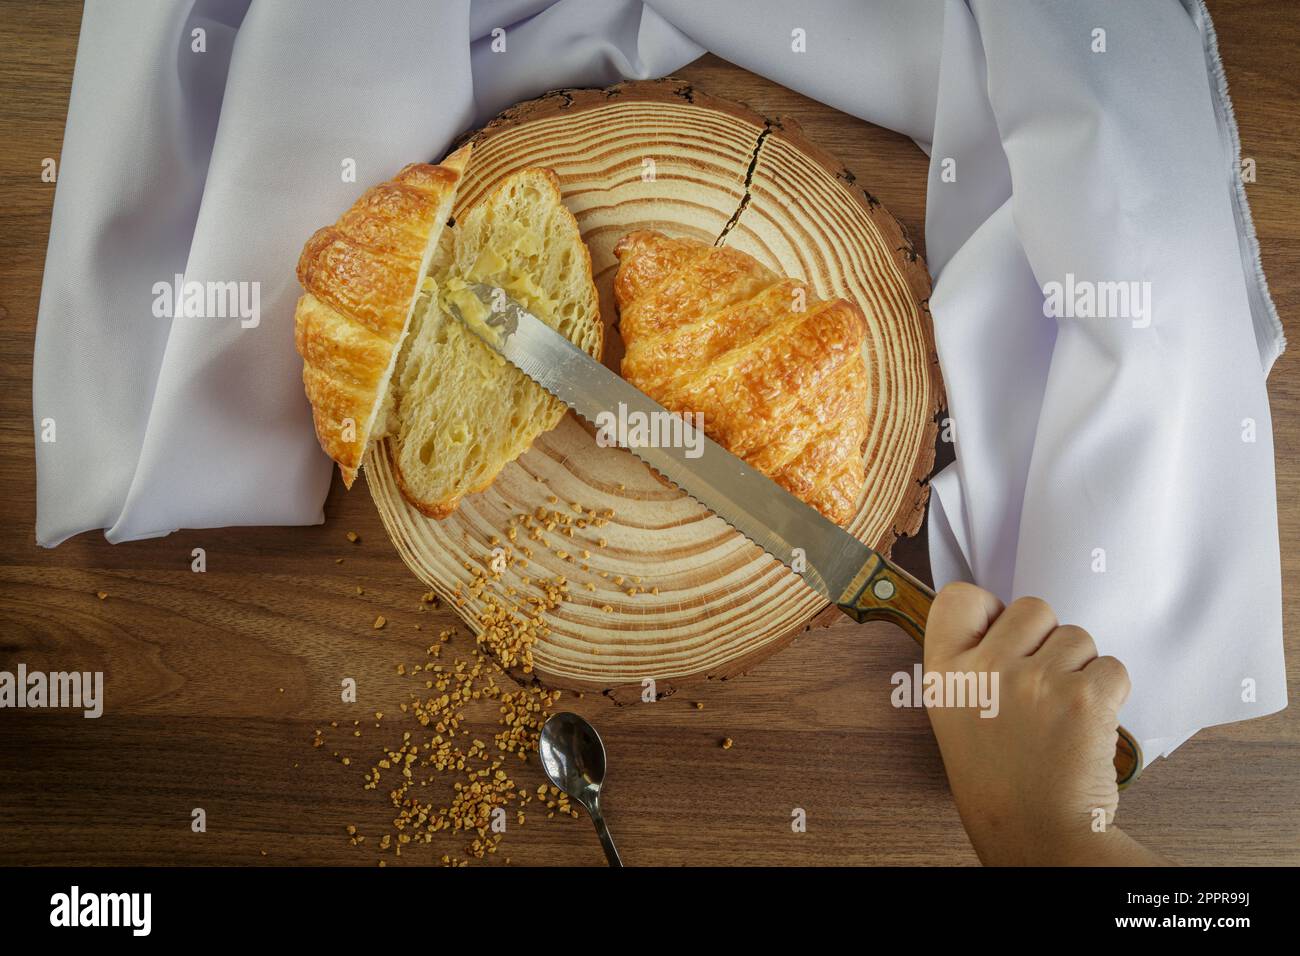 Köstliche Croissants auf einem Holzkoffer, mit weißem Handtuch und Butter auf den geschnittenen Croissants - Draufsicht. Stockfoto